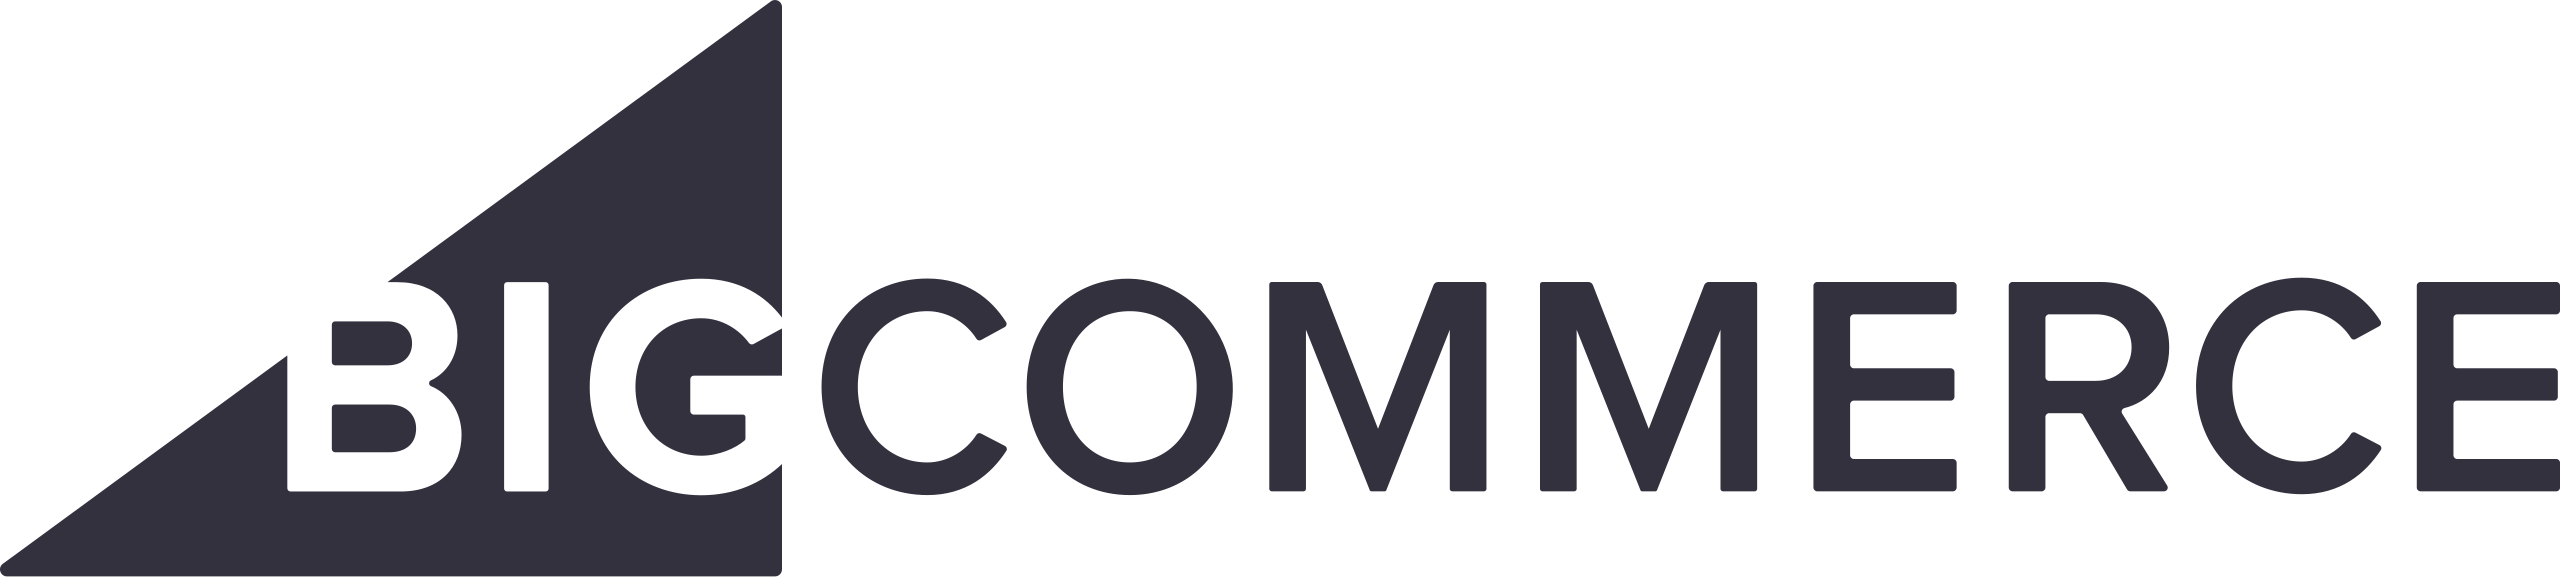 Schema App for BigCommerce | Schema Markup Implementation